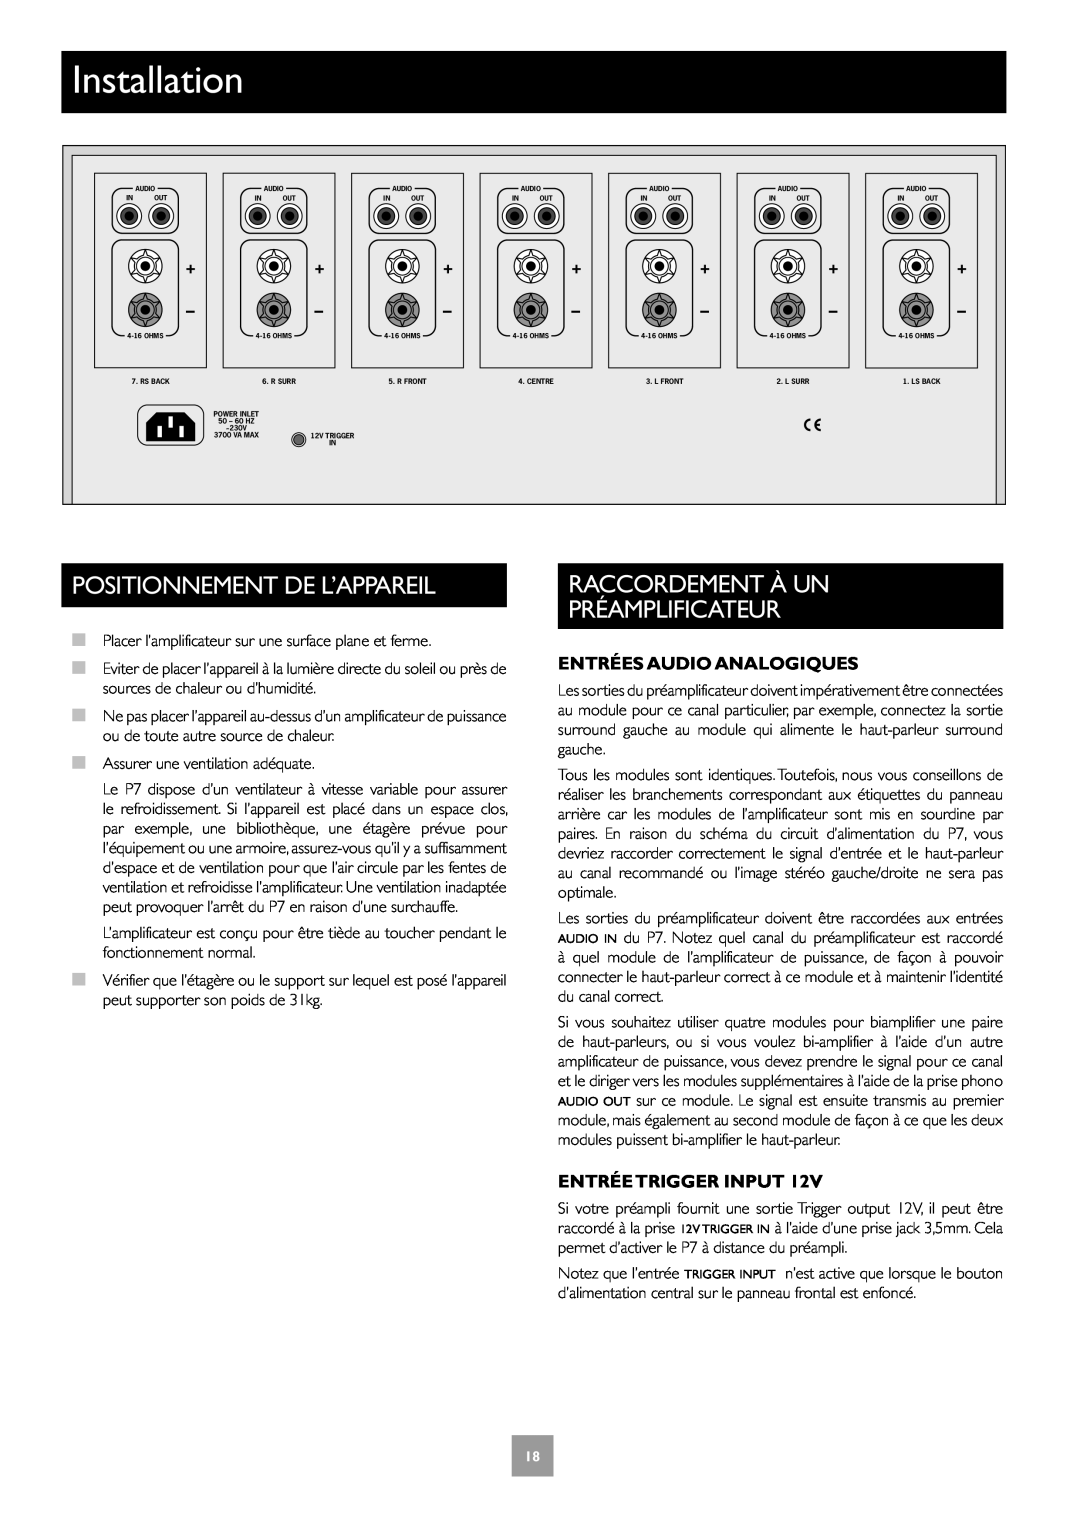 Arcam Multichannel Power Amplifier Positionnement De L’Appareil, Raccordement À Un Préamplificateur, Entrée Trigger Input 